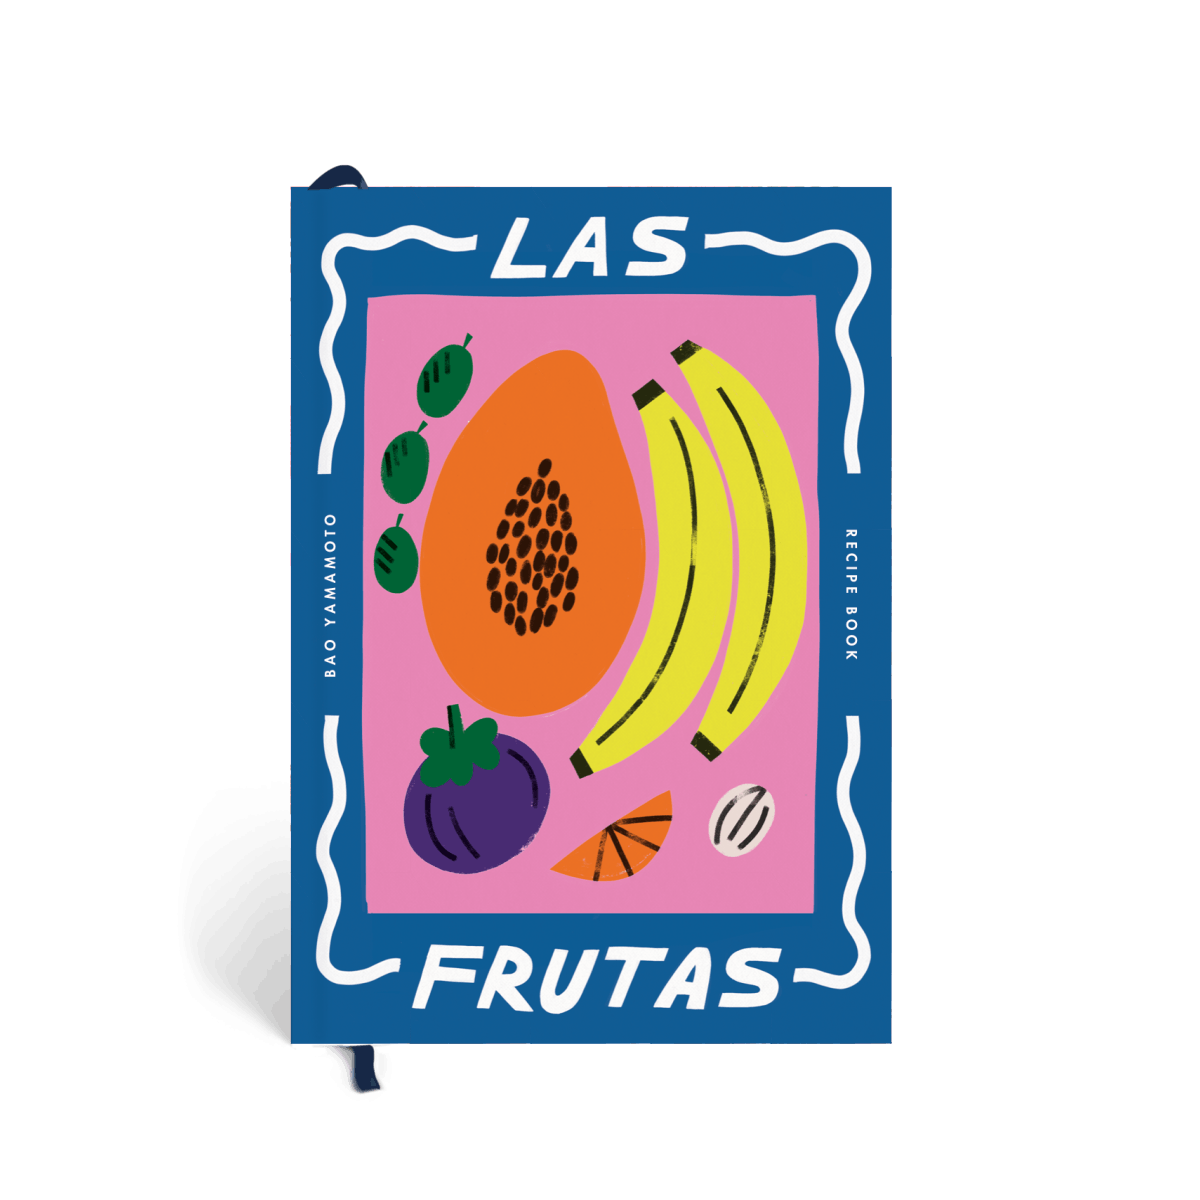 Las Frutas